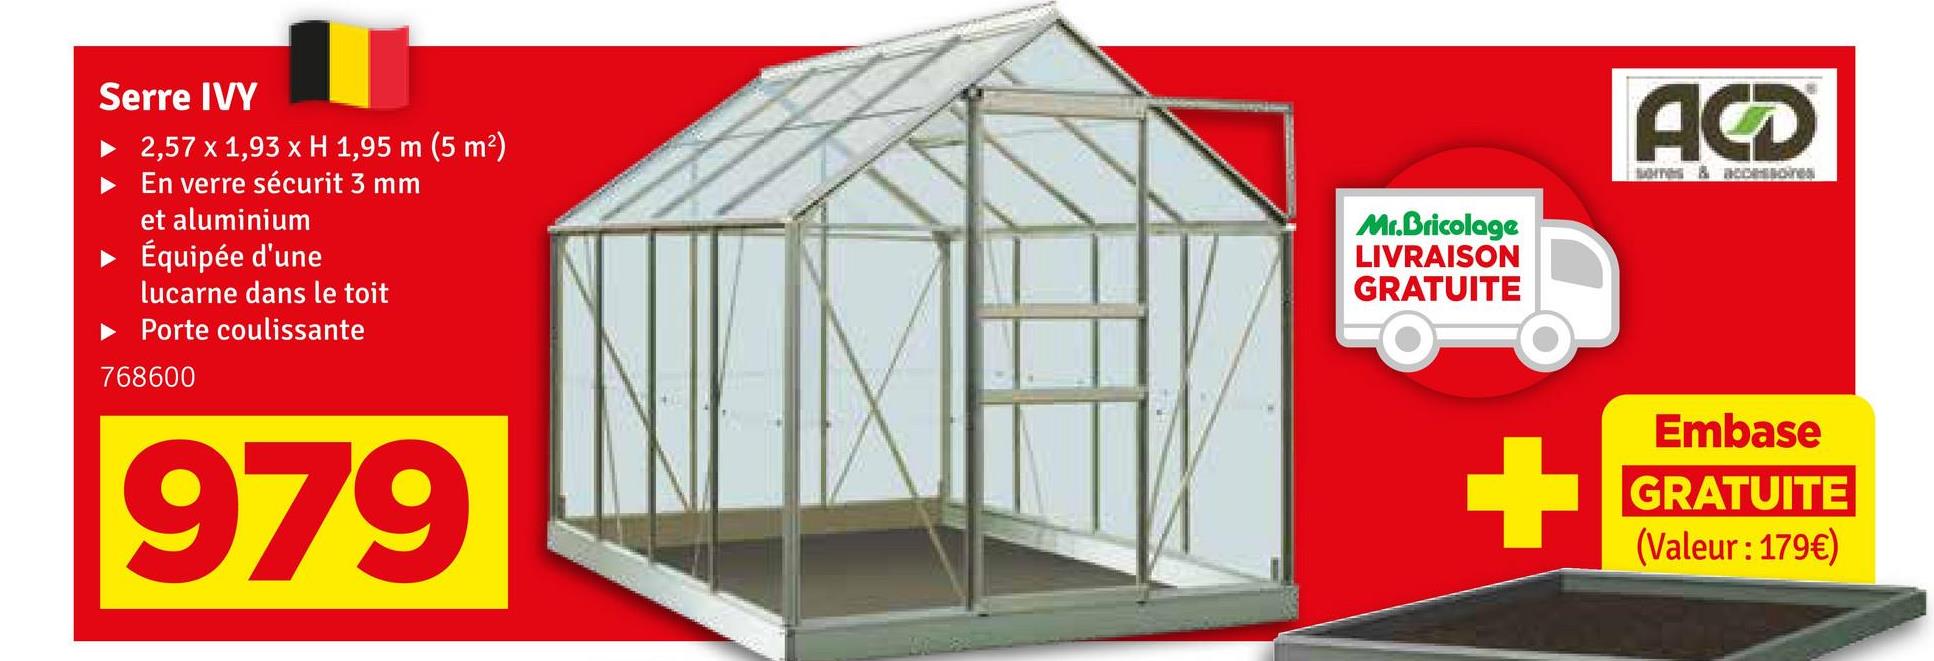 Serre IVY
2,57 x 1,93 x H 1,95 m (5 m²)
En verre sécurit 3 mm
et aluminium
▸ Équipée d'une
lucarne dans le toit
► Porte coulissante
768600
979
Mr.Bricolage
LIVRAISON
GRATUITE
ACD
Embase
GRATUITE
(Valeur : 179€)